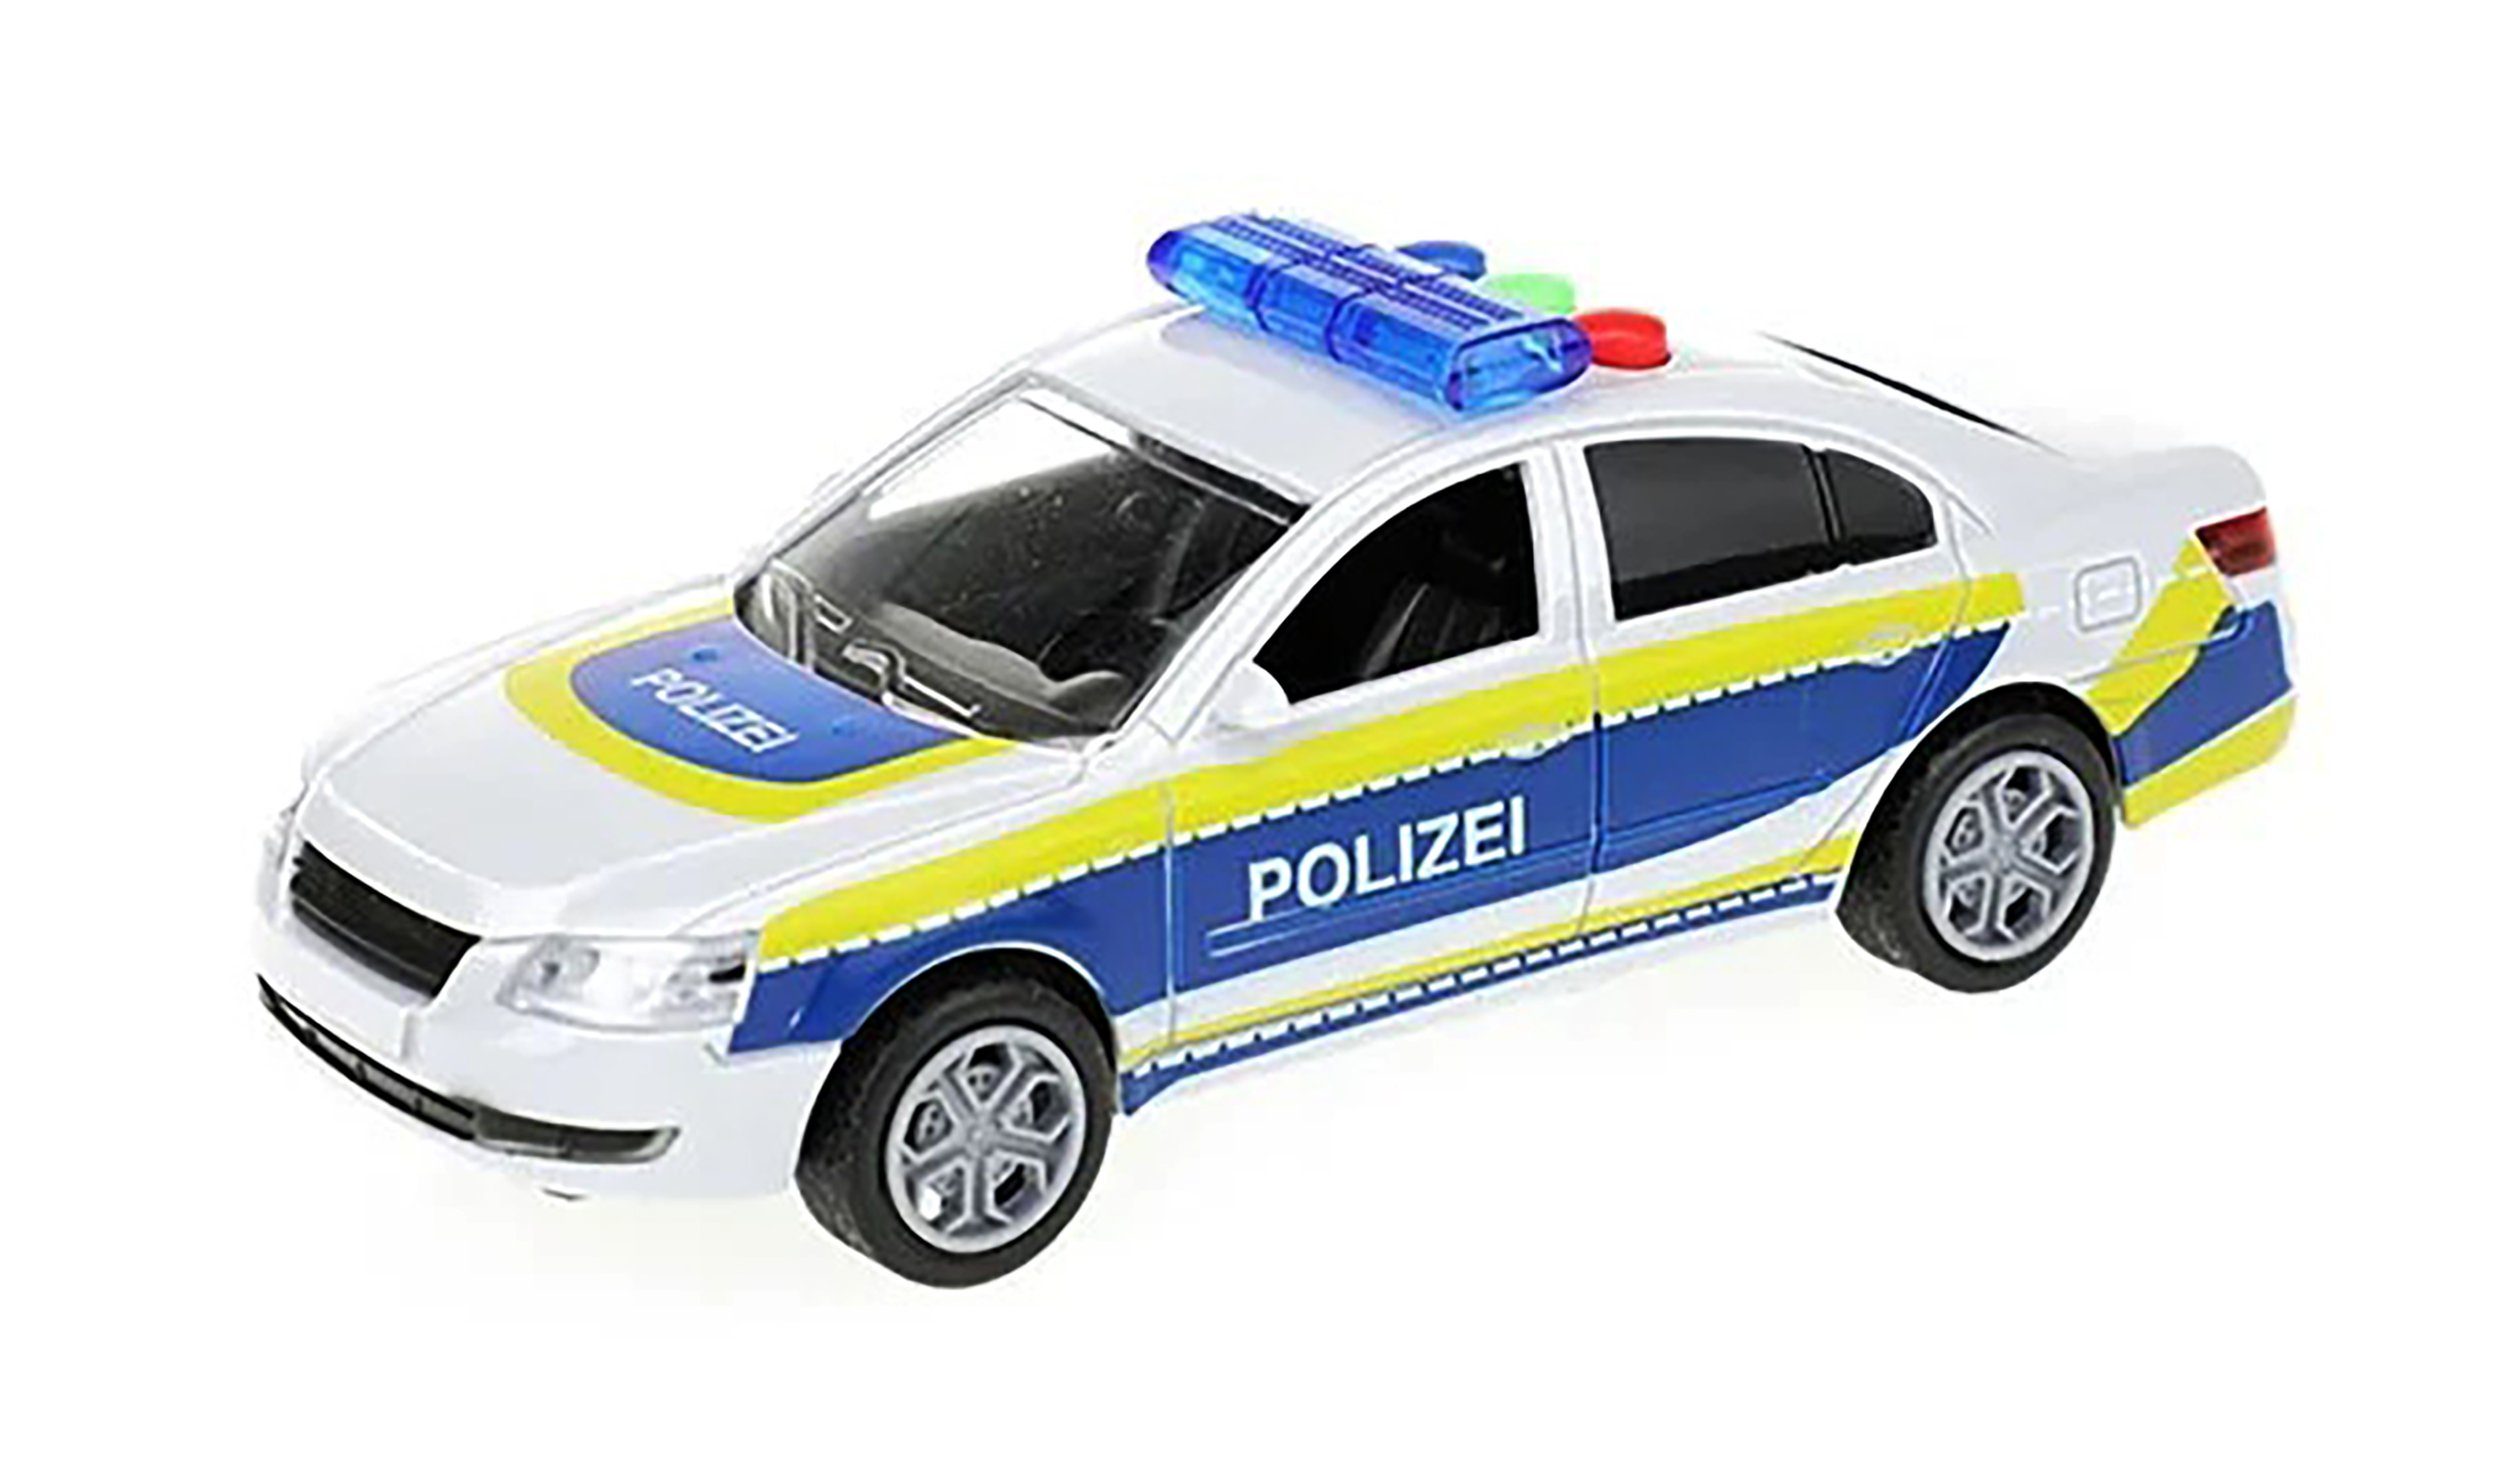 Toi-Toys Modellauto POLIZEI Modellauto 16cm mit Licht Sound Friktionsantrieb Modell 50, Auto Spielzeugauto Spielzeug Geschenk Kinder